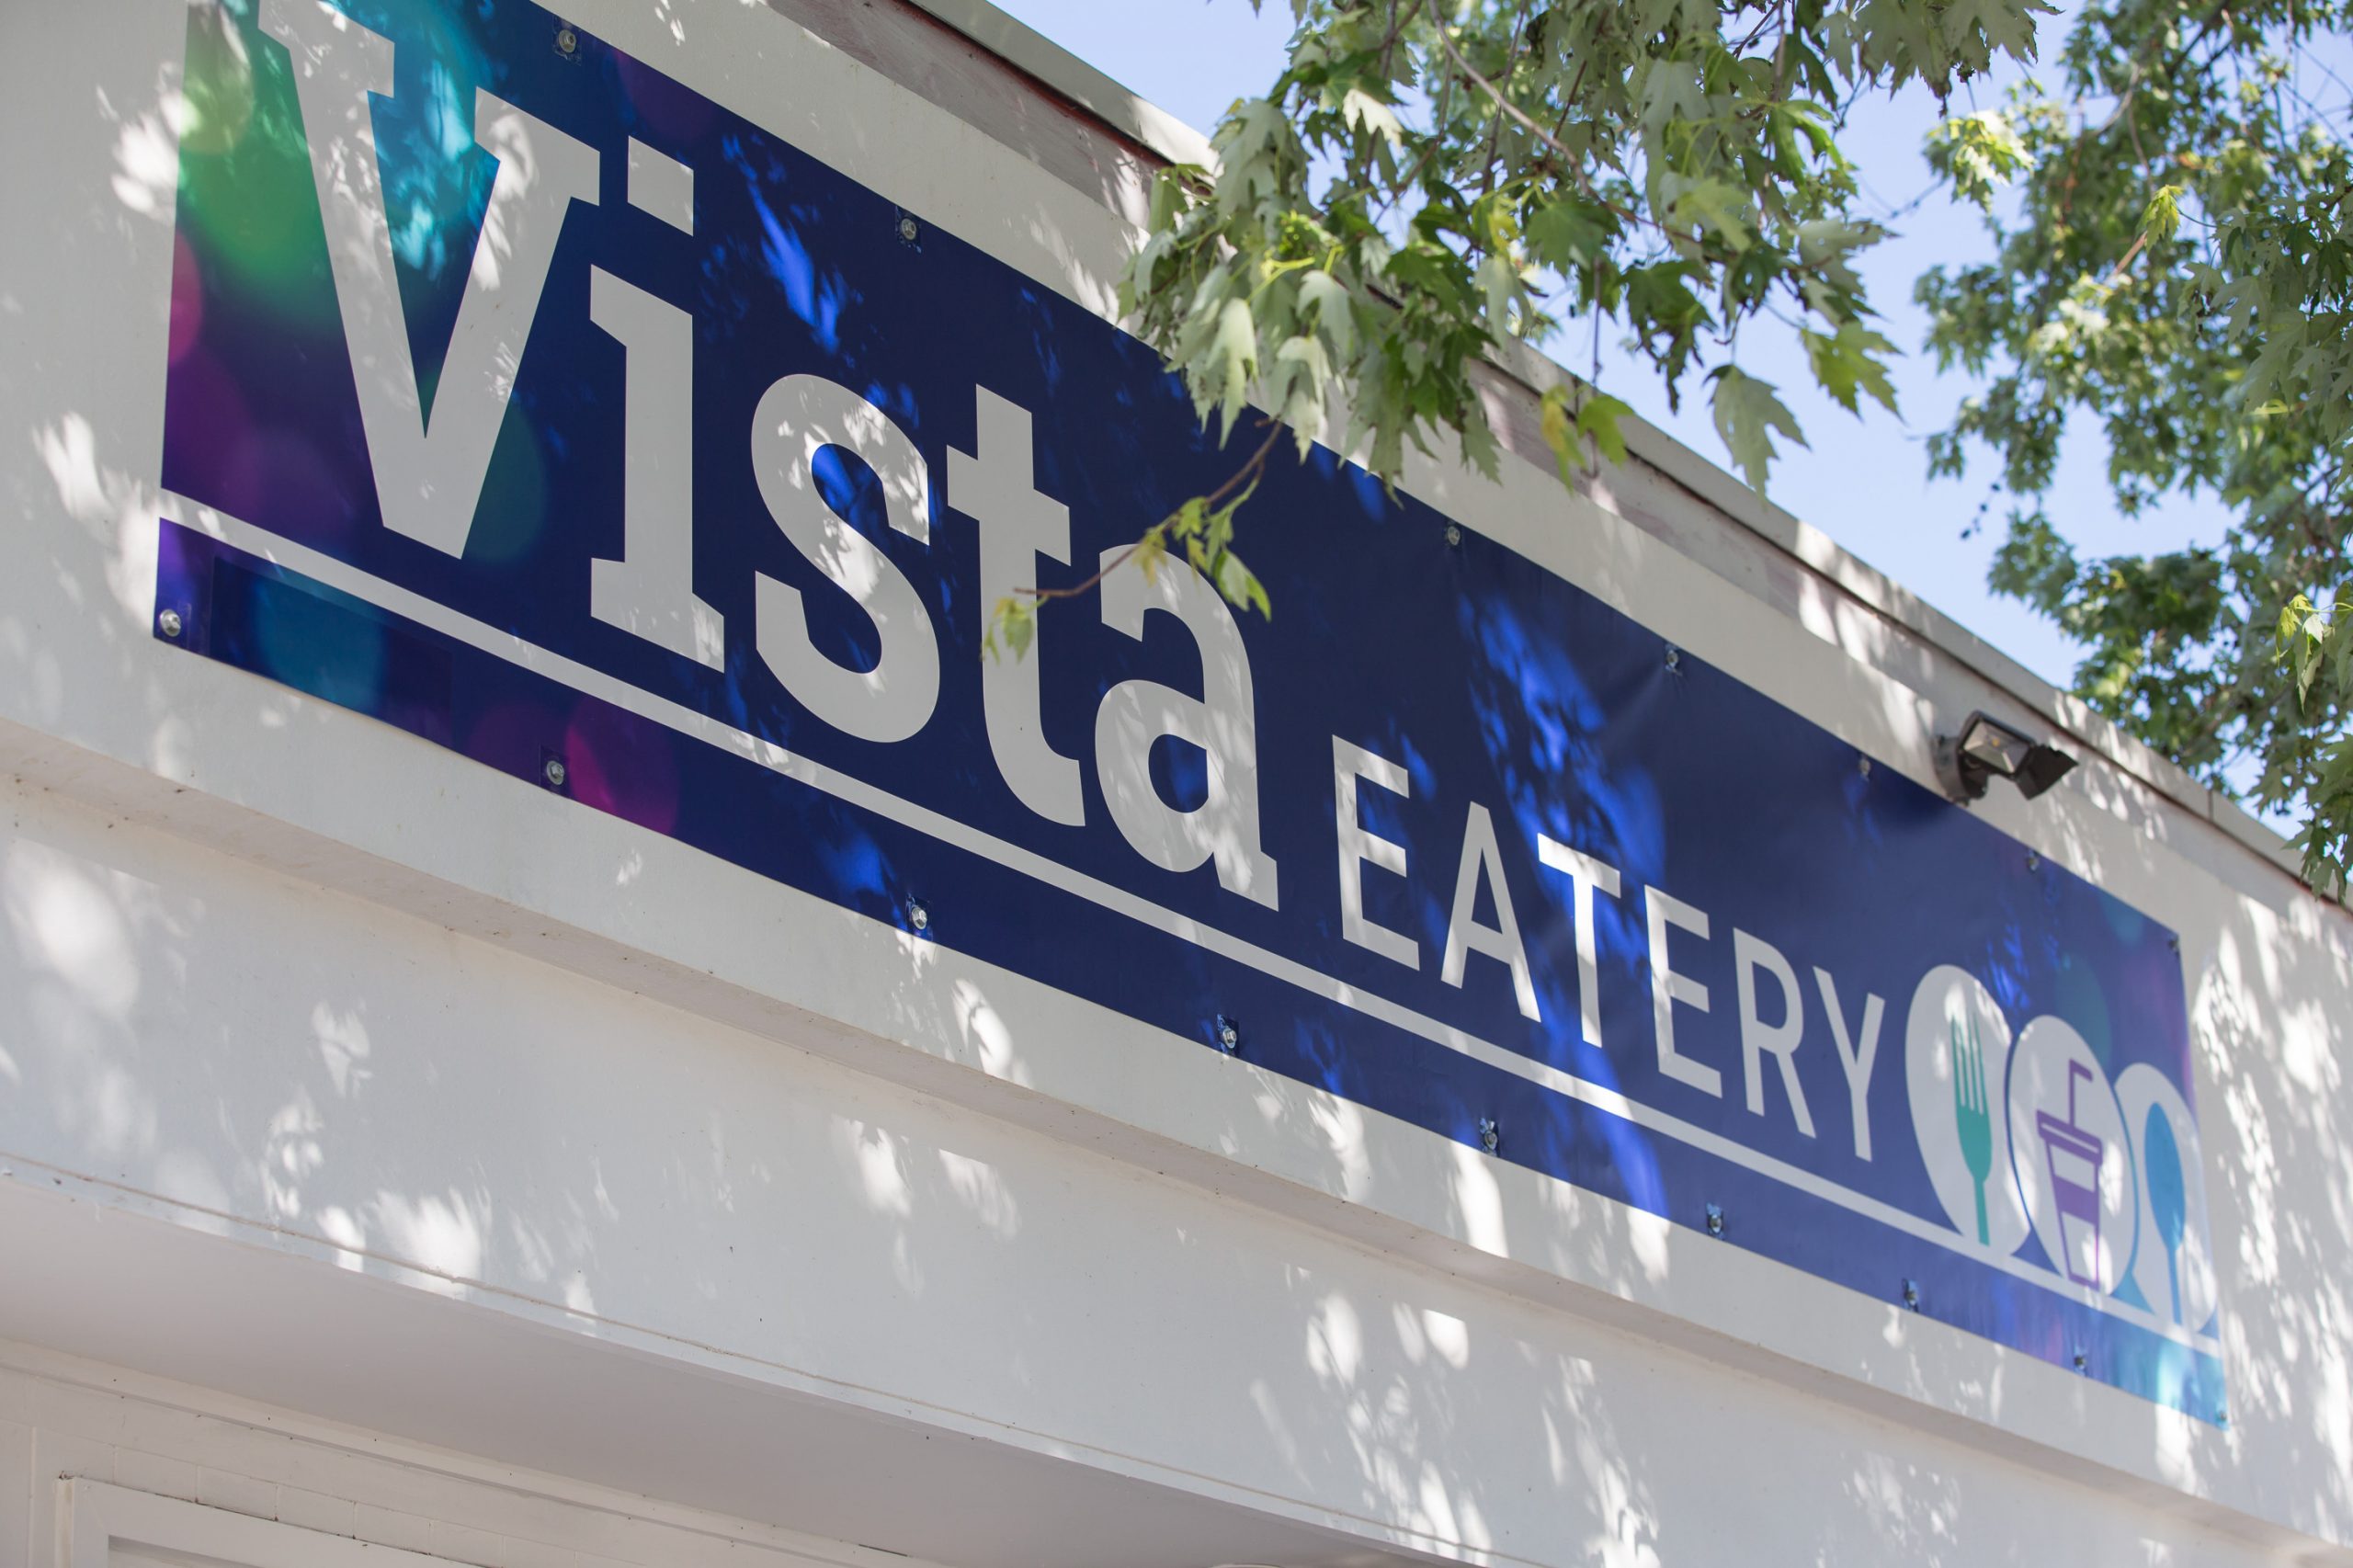 Ontario Place — Vista Eatery